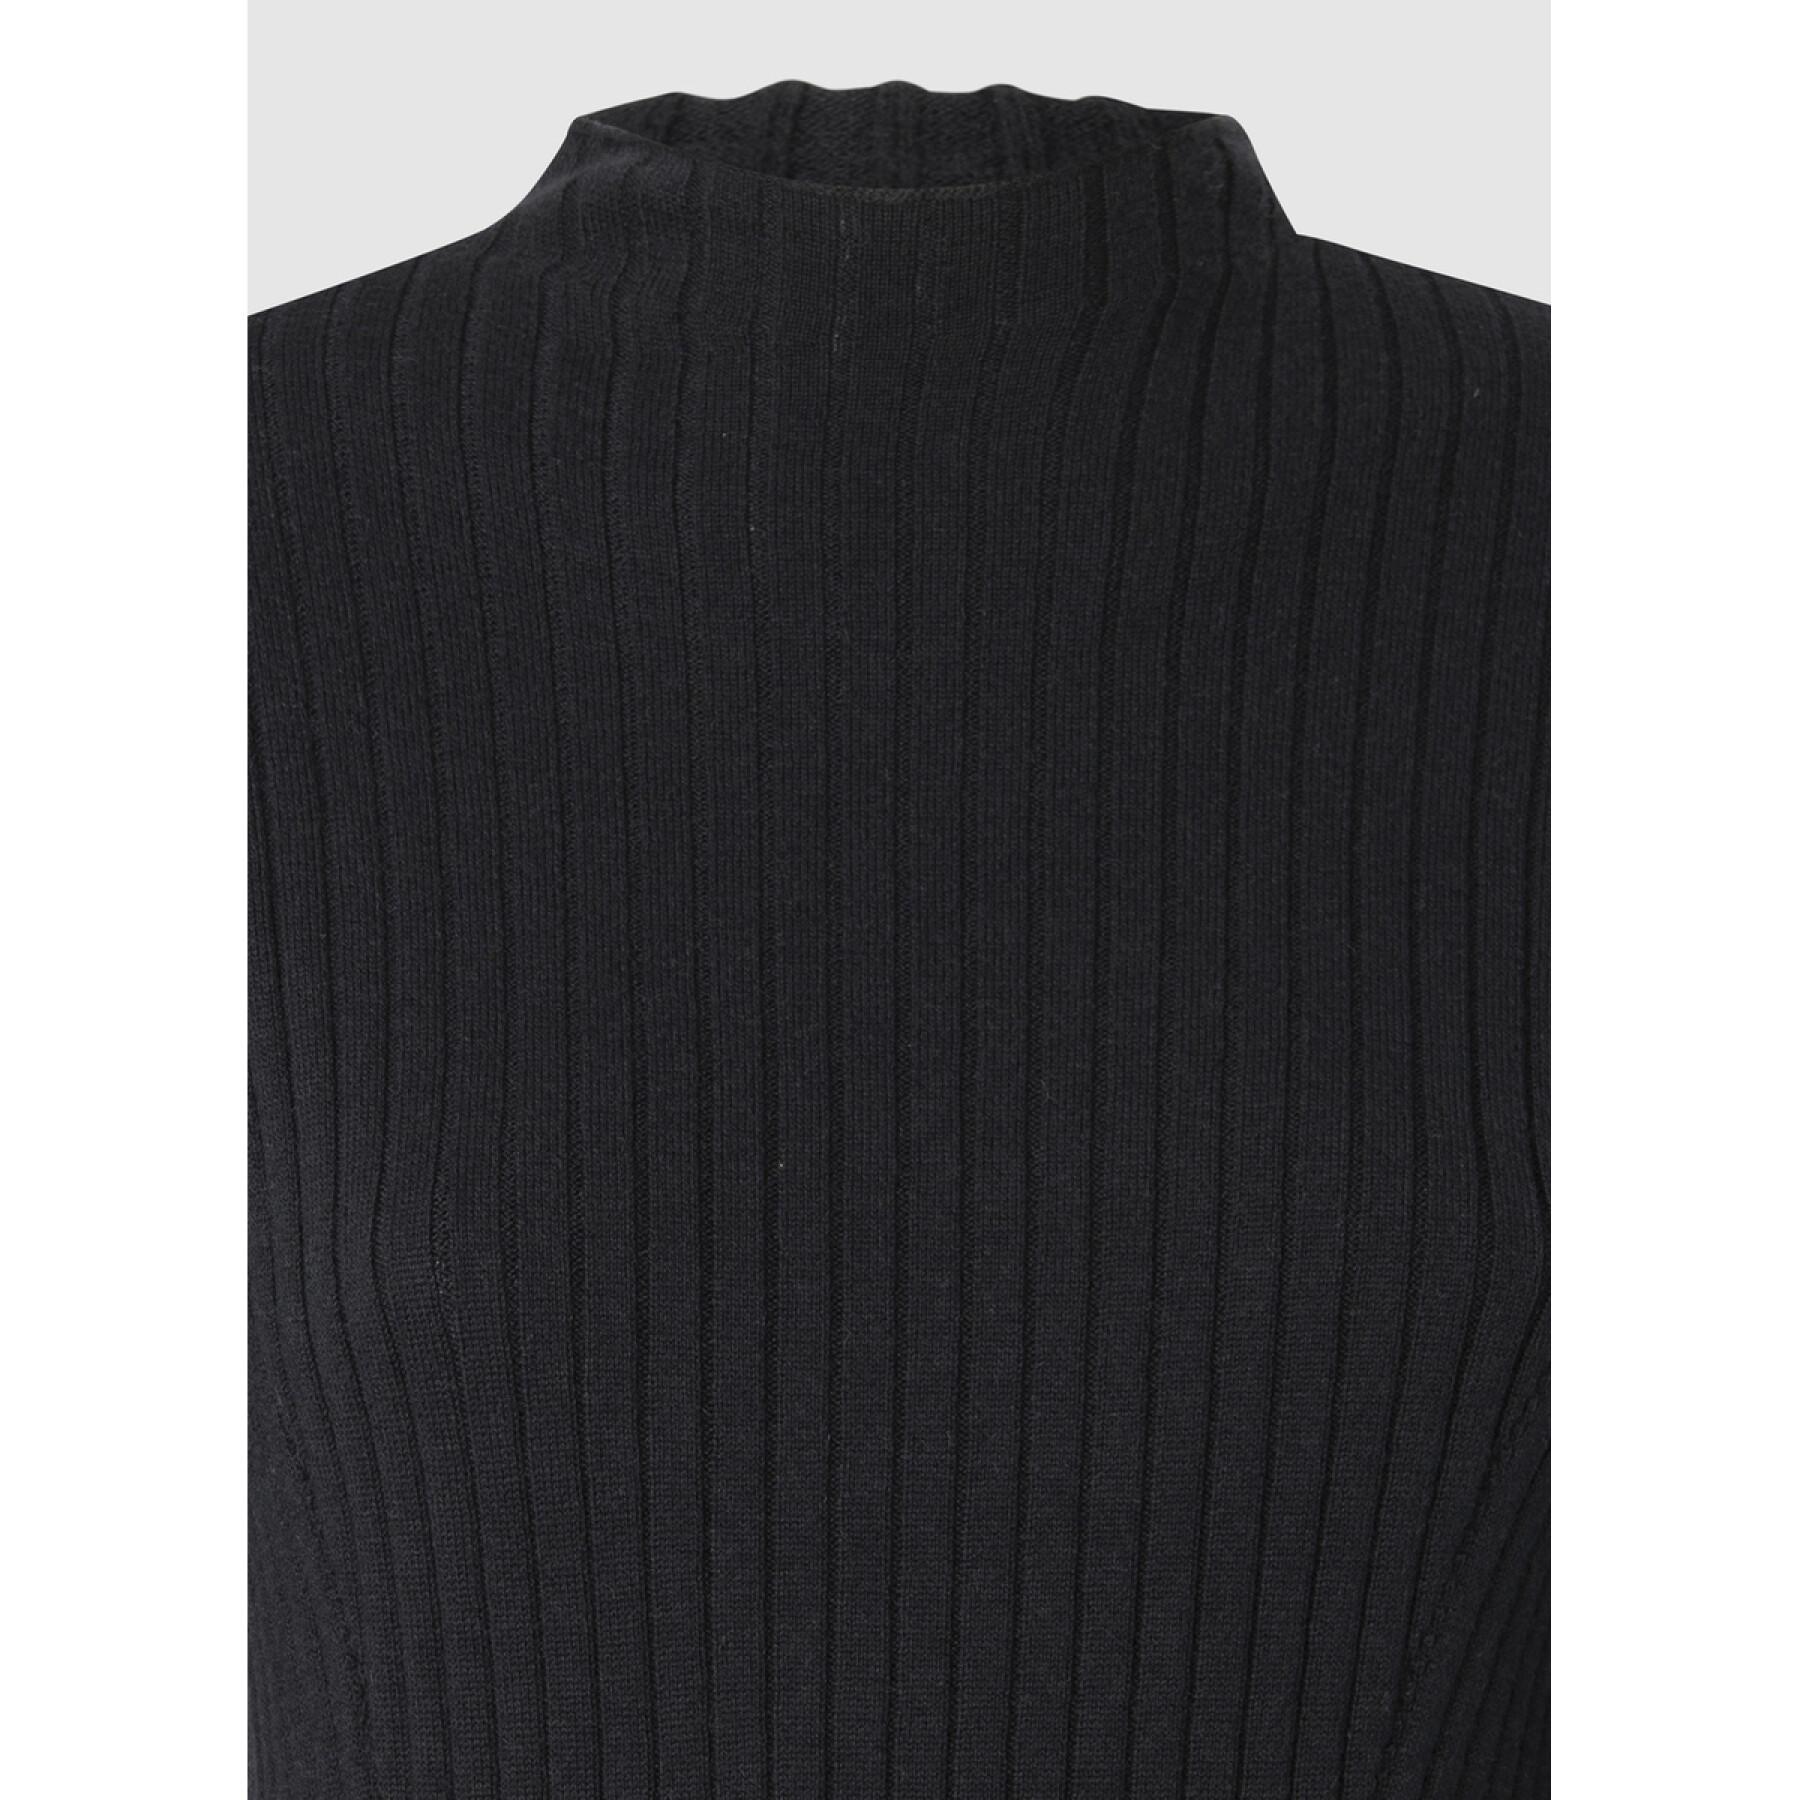 Women's long sleeve sweater dress Pepe Jeans Belinda